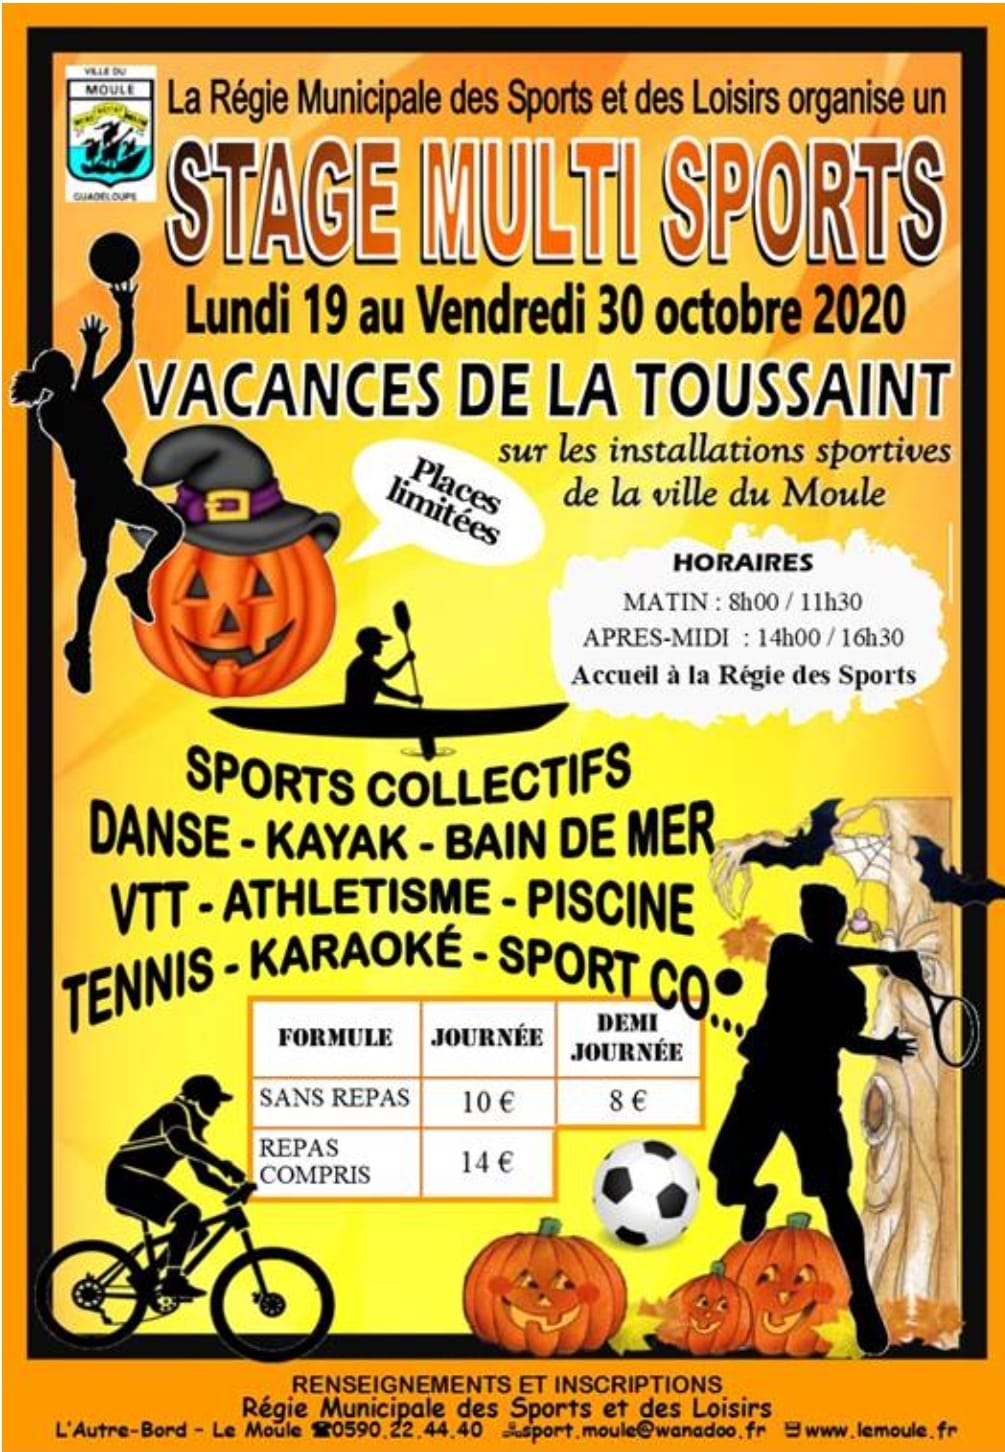 Vacances de toussaint : Stage multi sports au Moule